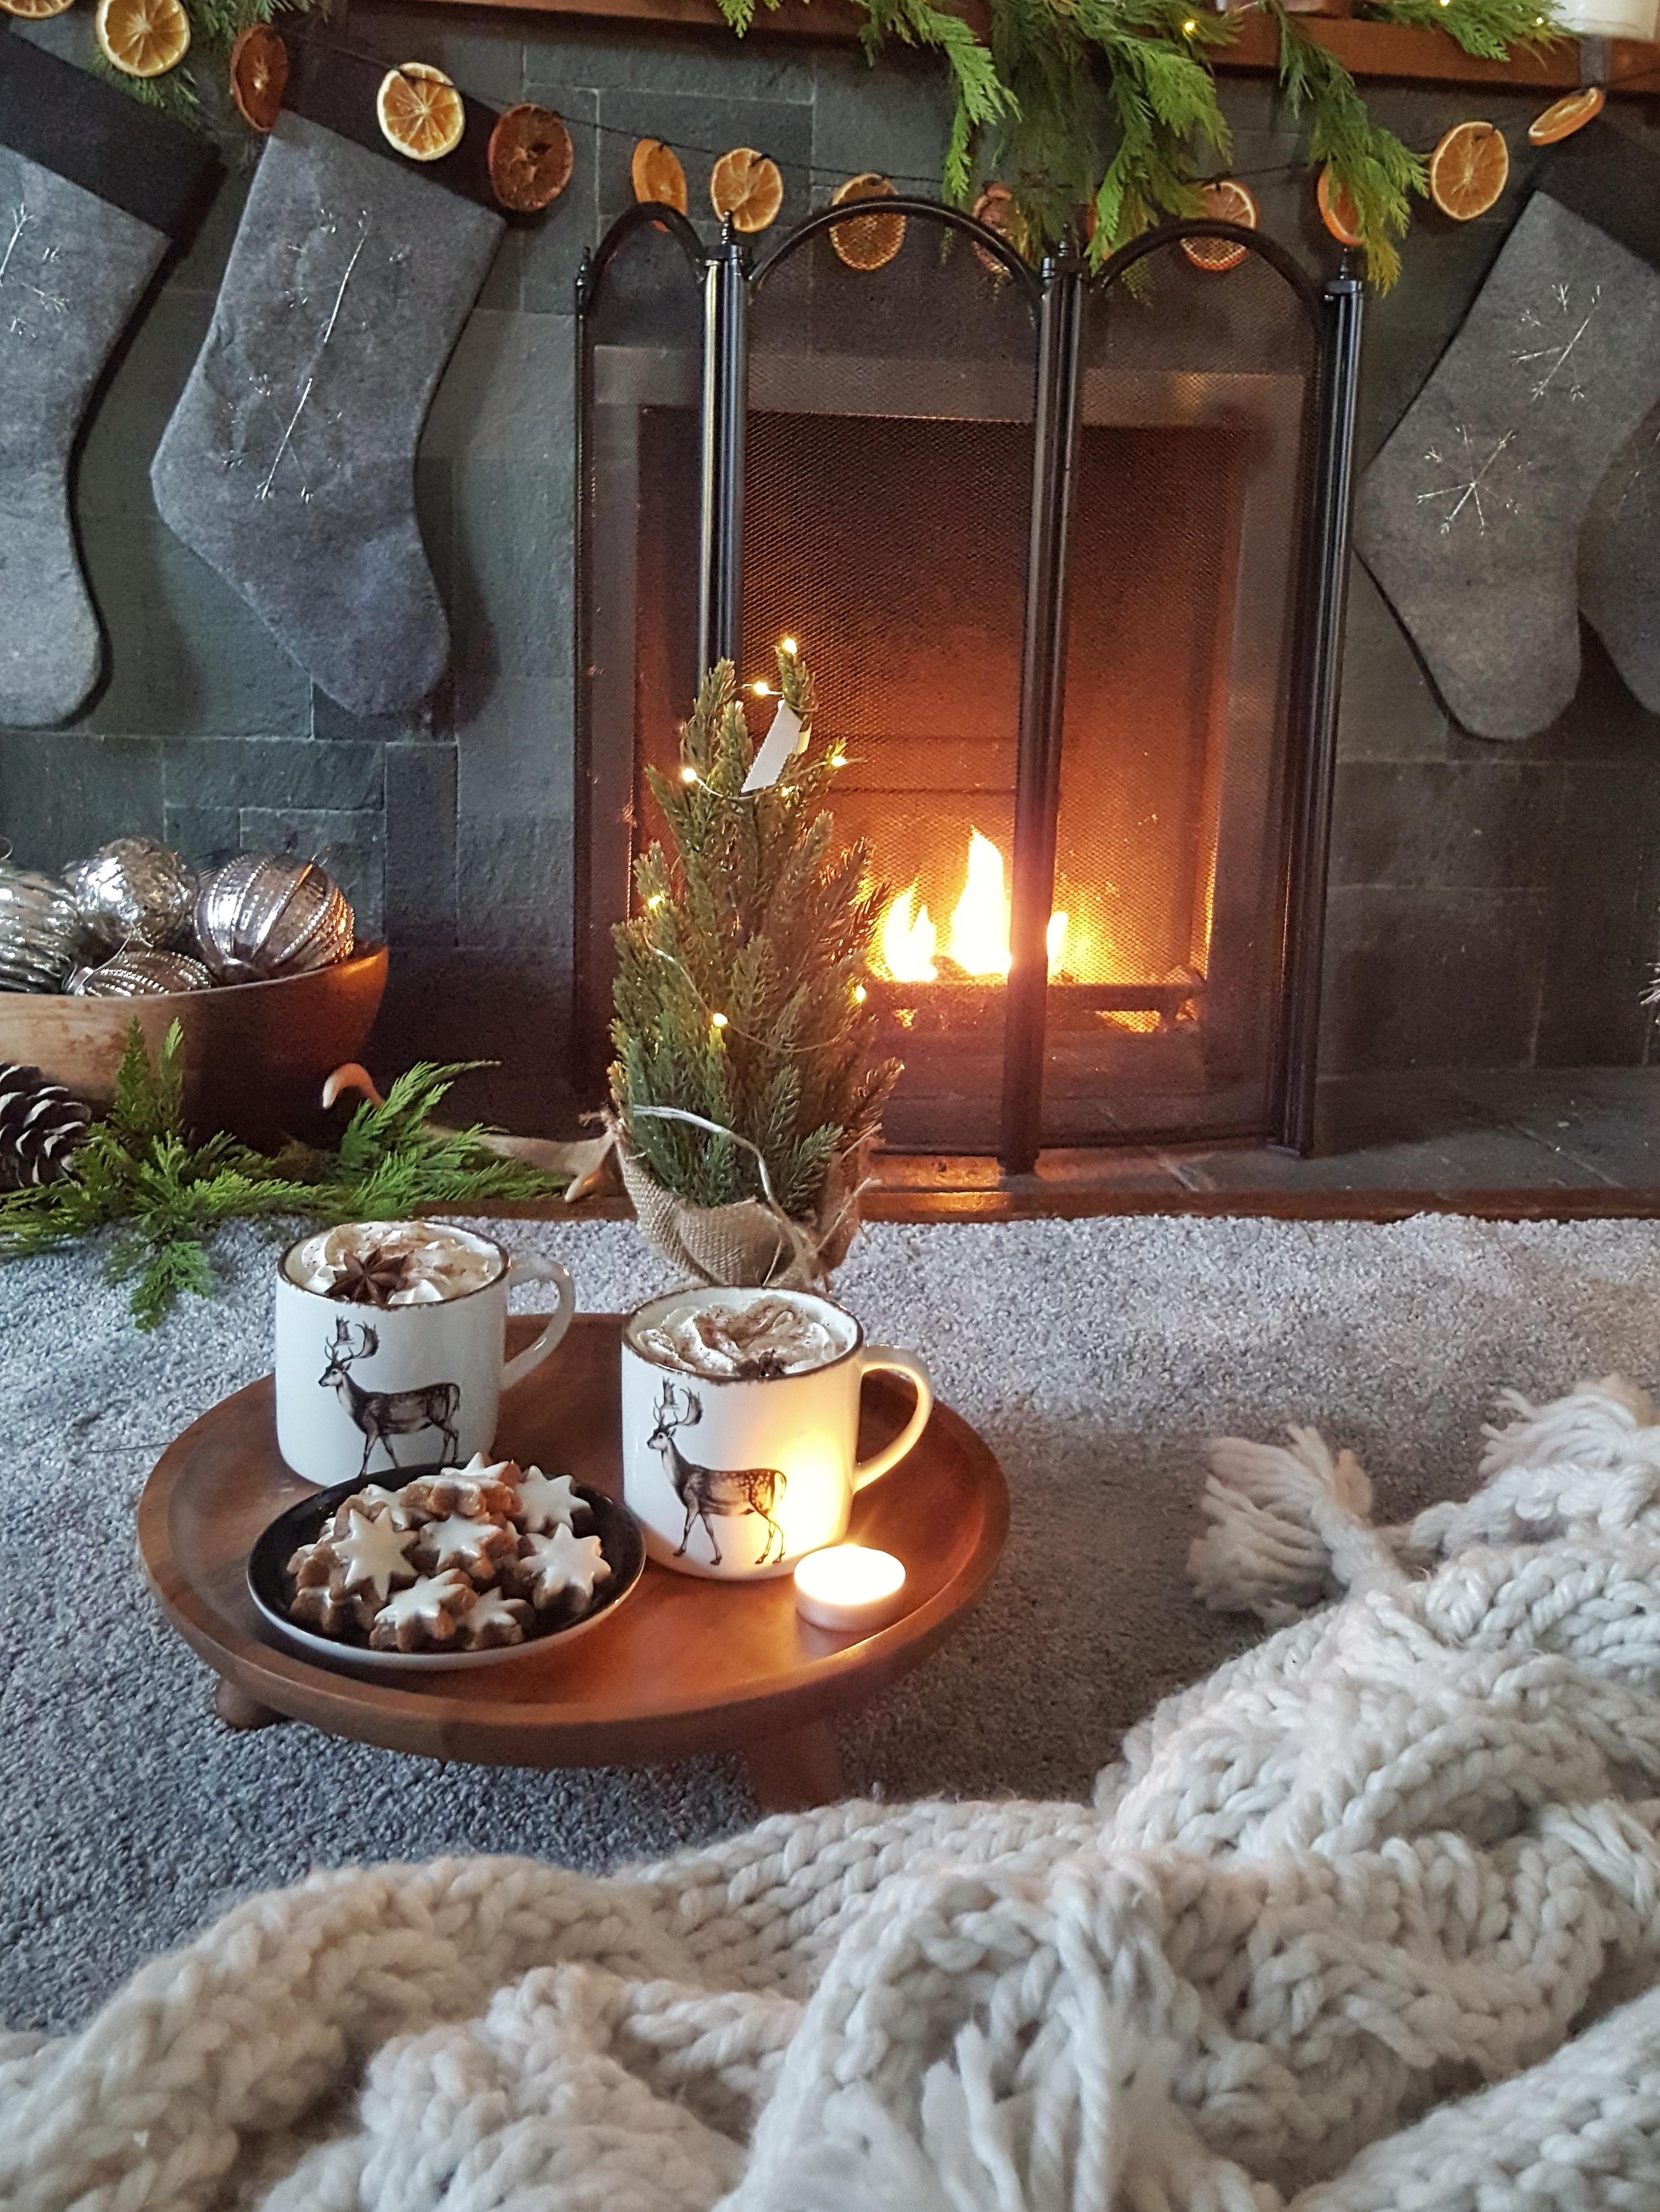 #advent #weihnachten #xmas #wohnzimmer #hygge #couchliebt #interior #kamin